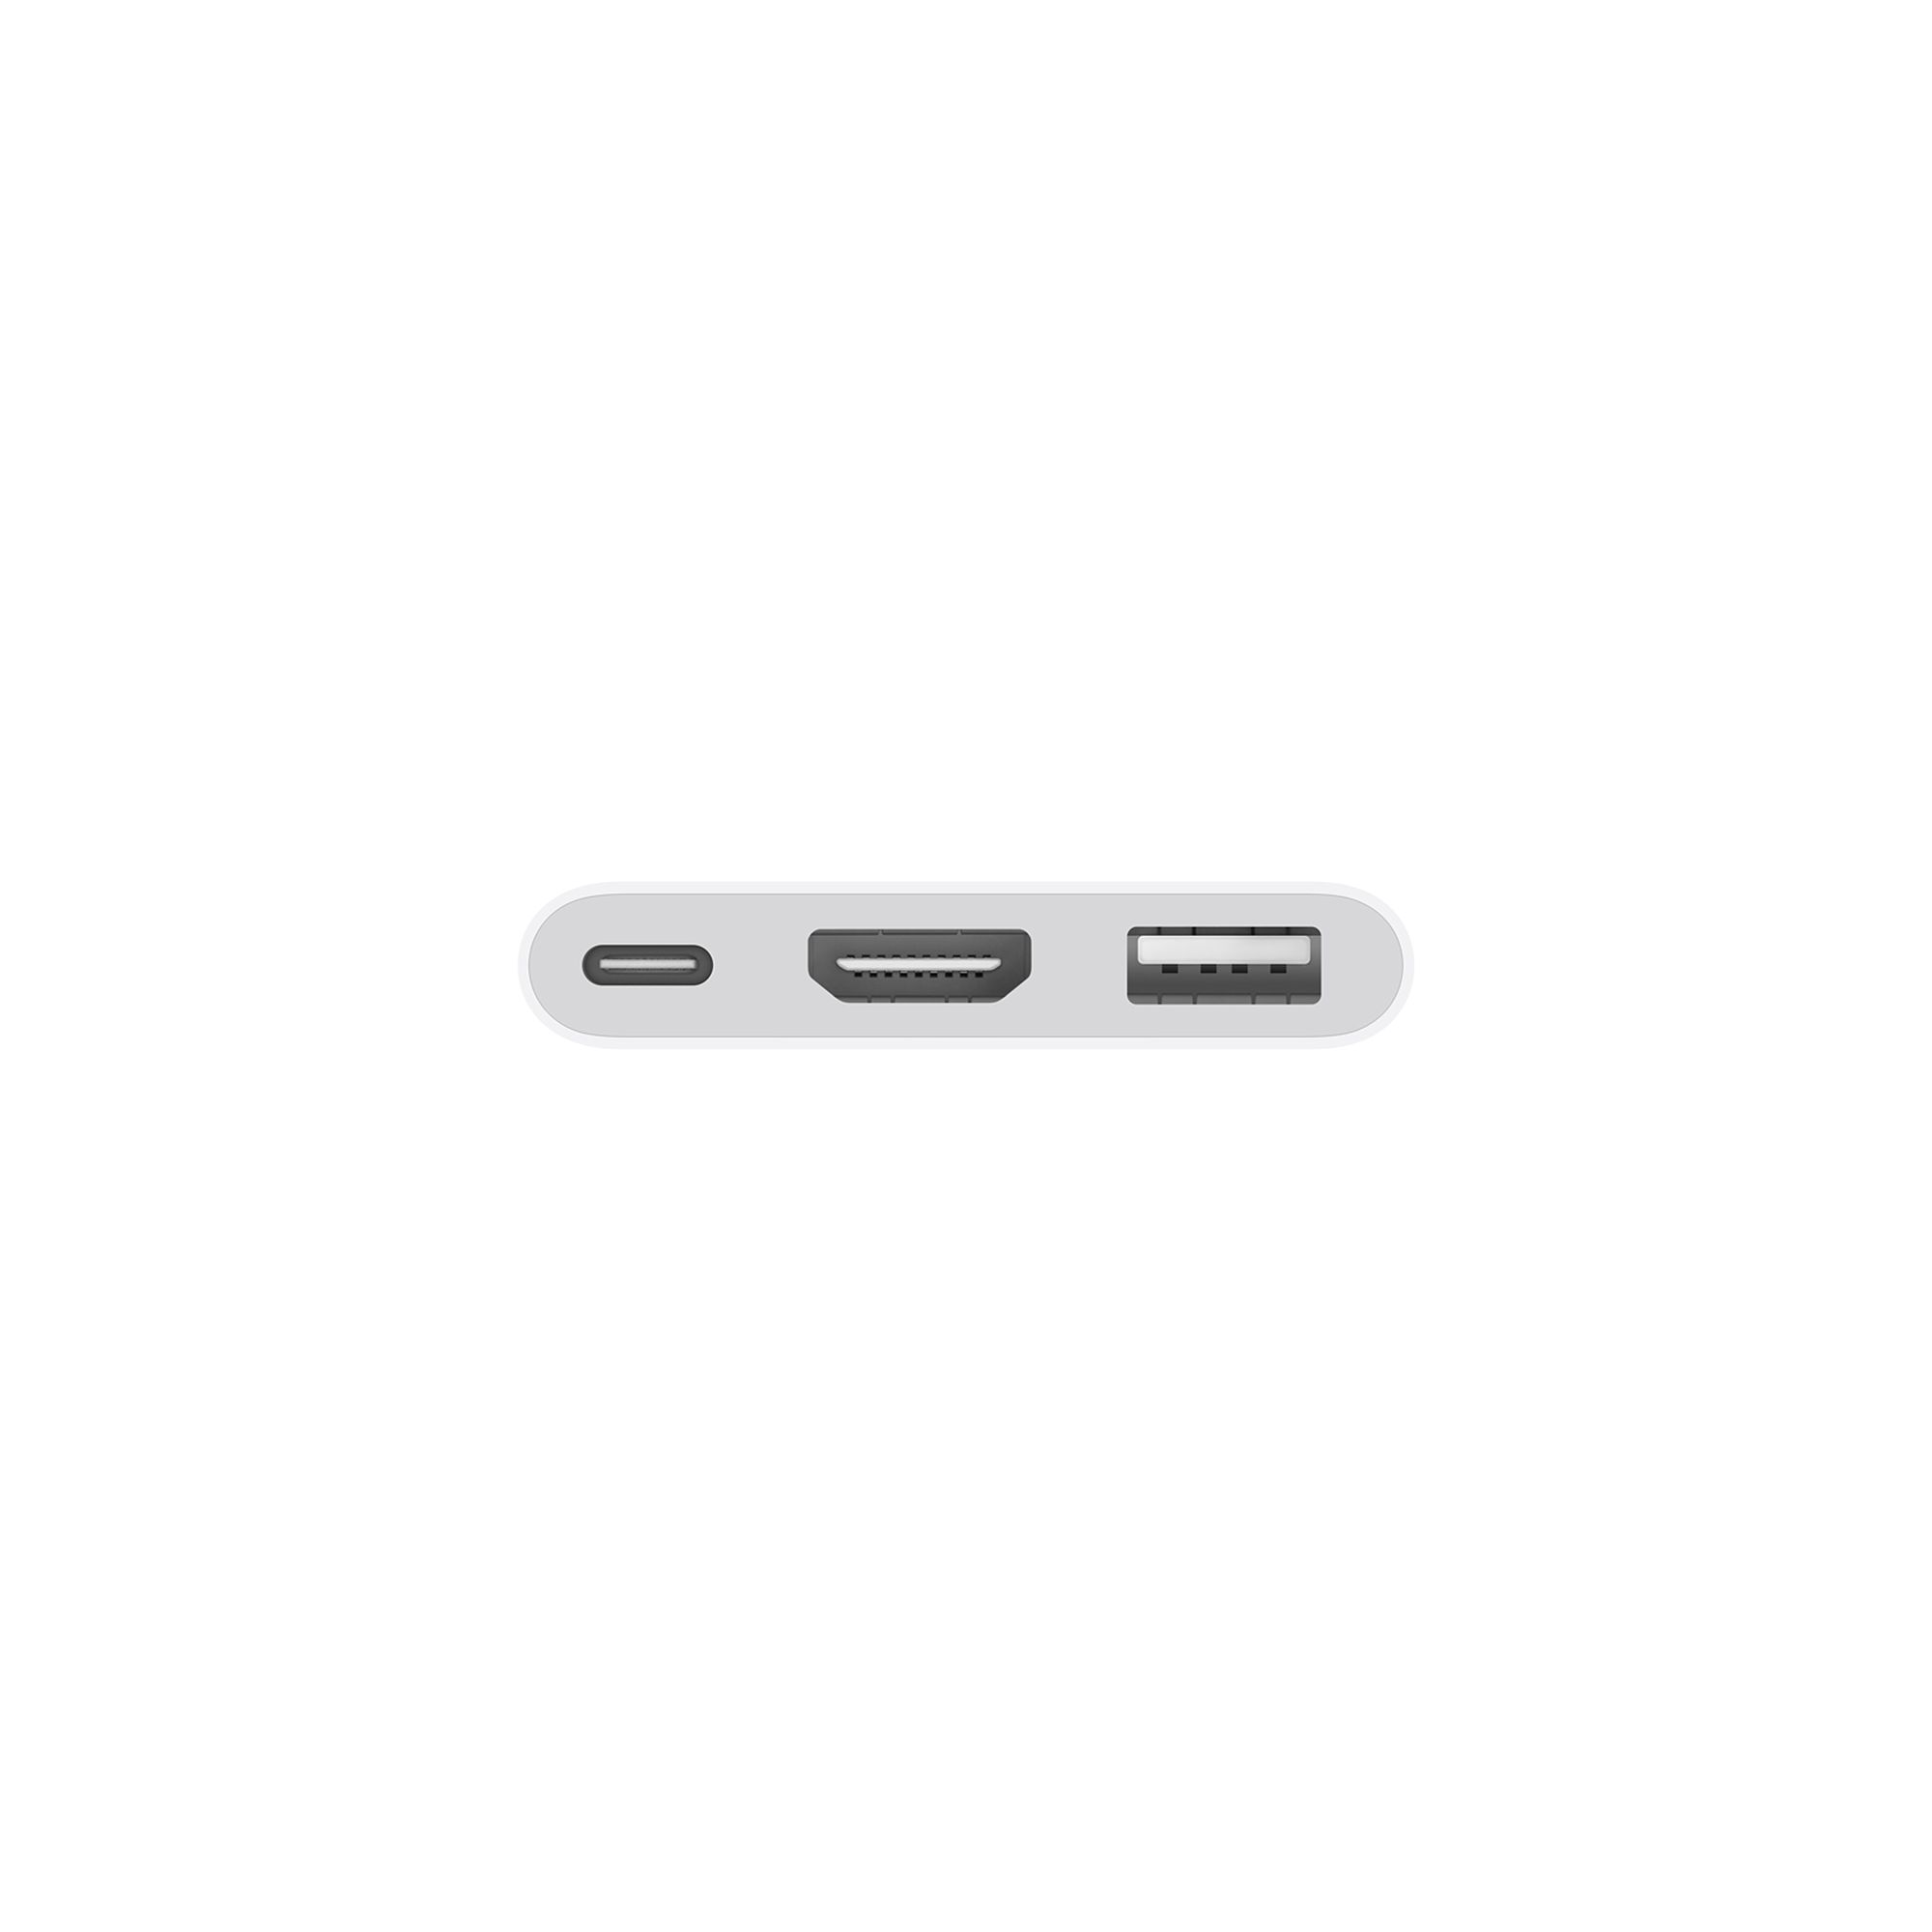 Apple USB-C Digital AV Multiport Adapter 4K60Hz MUF82